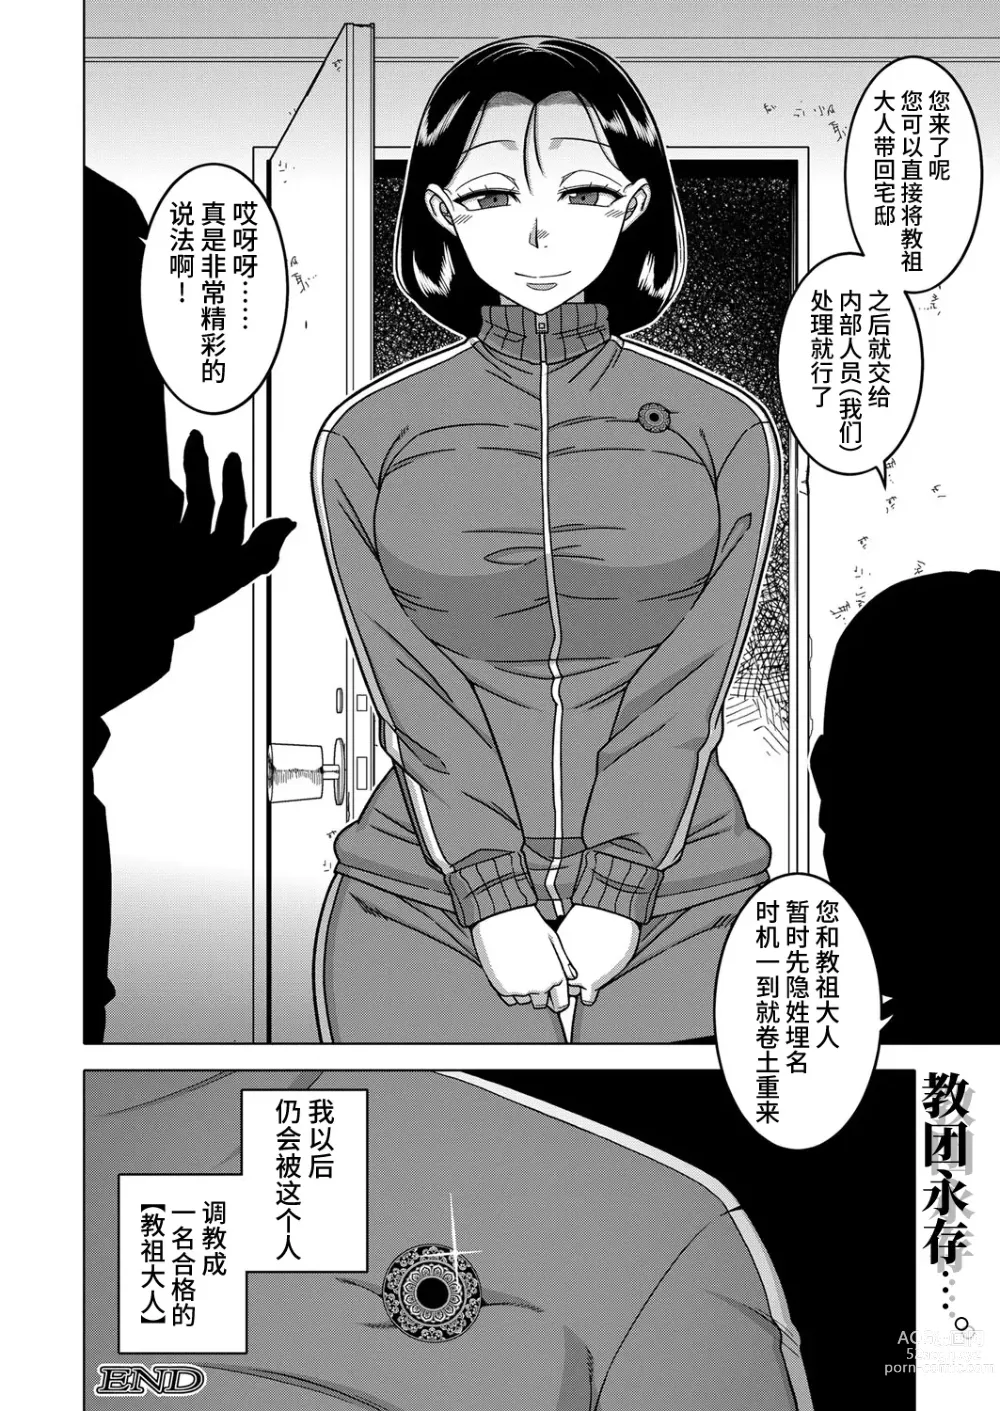 Page 197 of manga Kami-sama no Tsukurikata Ch. 1-5